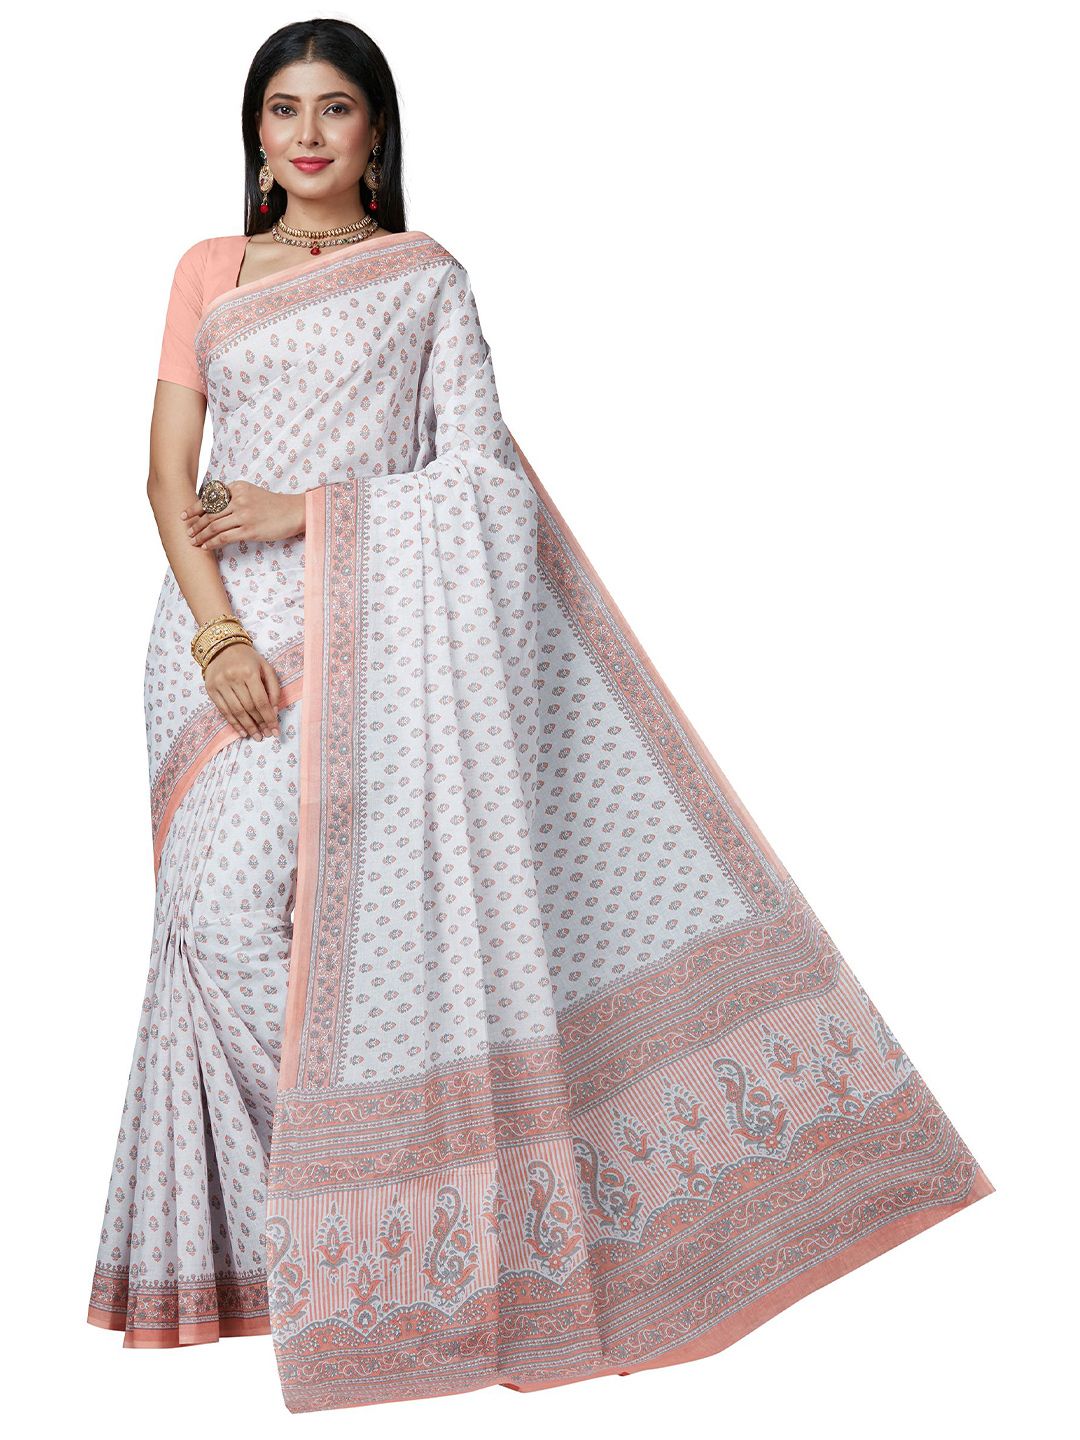 SHANVIKA White & Peach-Coloured Ethnic Motifs Pure Cotton  Block Print Saree Price in India